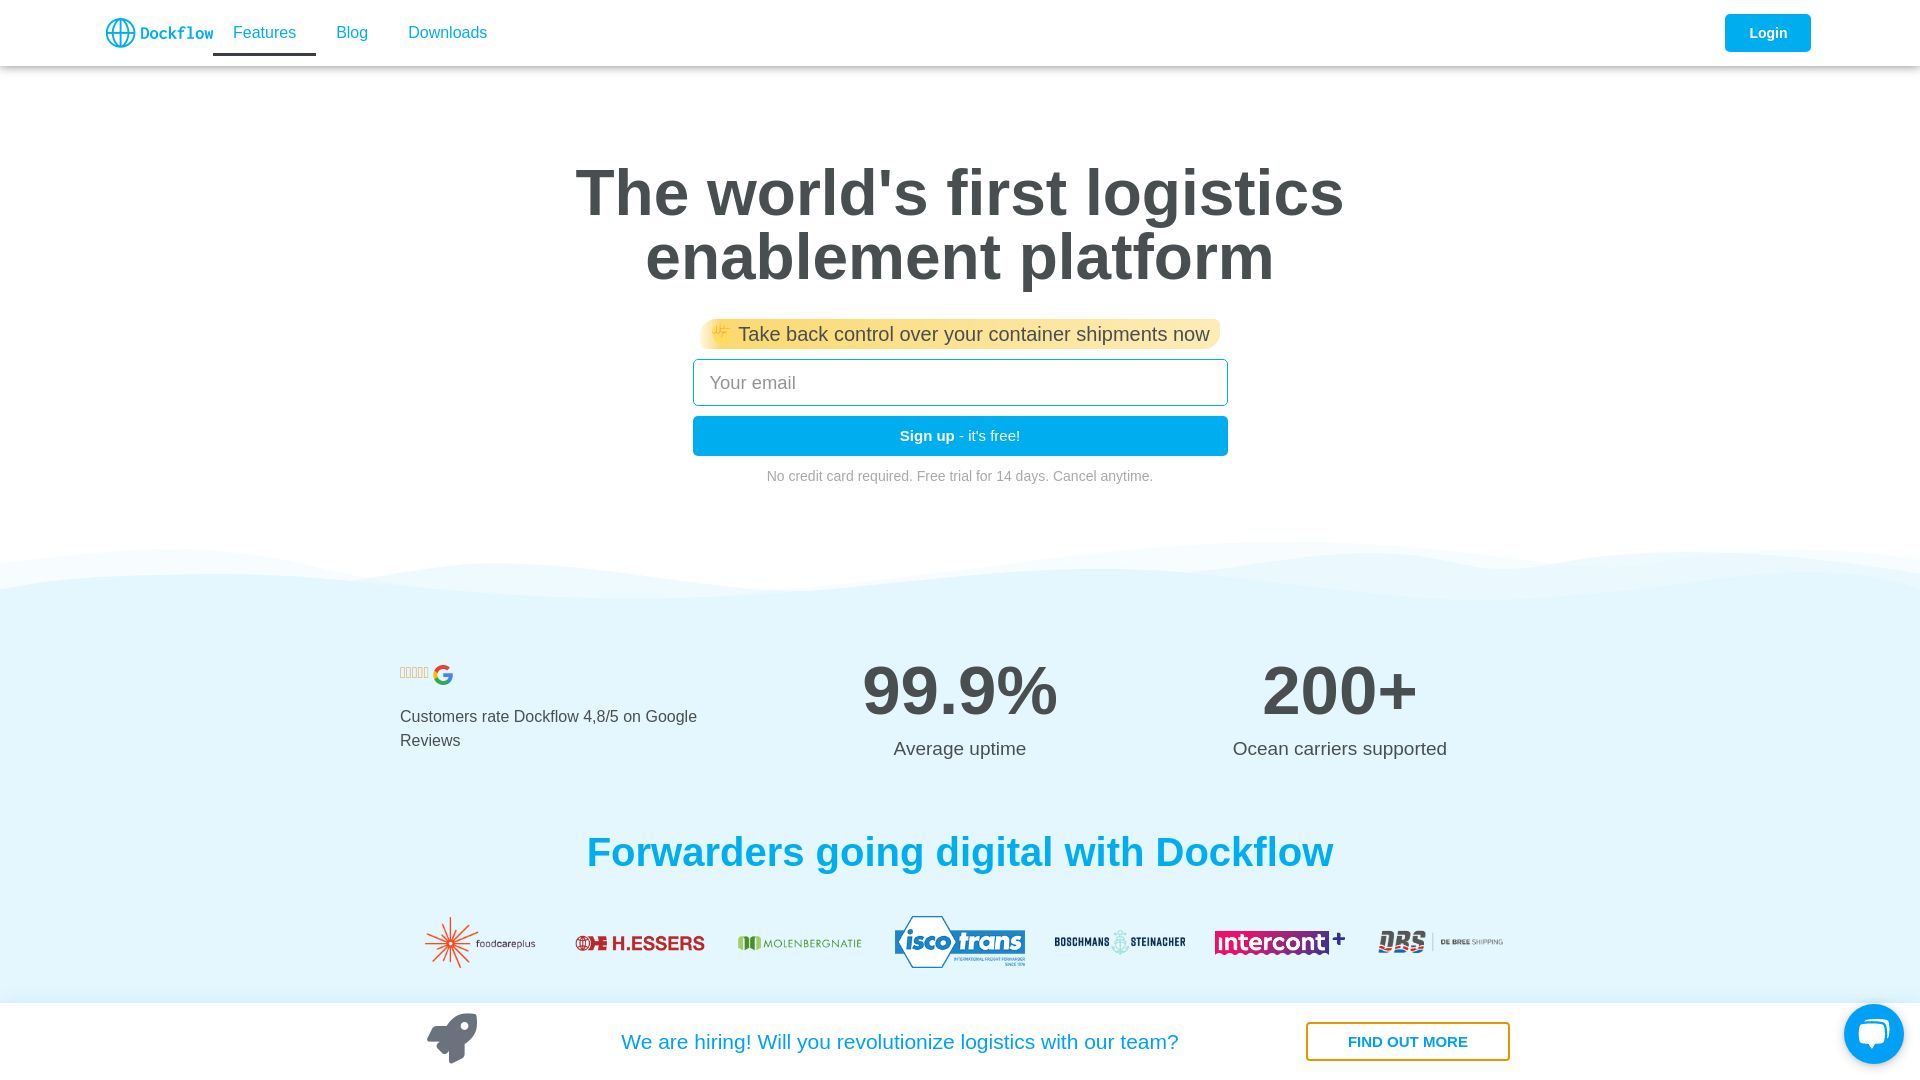 Website status dockflow.com is   ONLINE